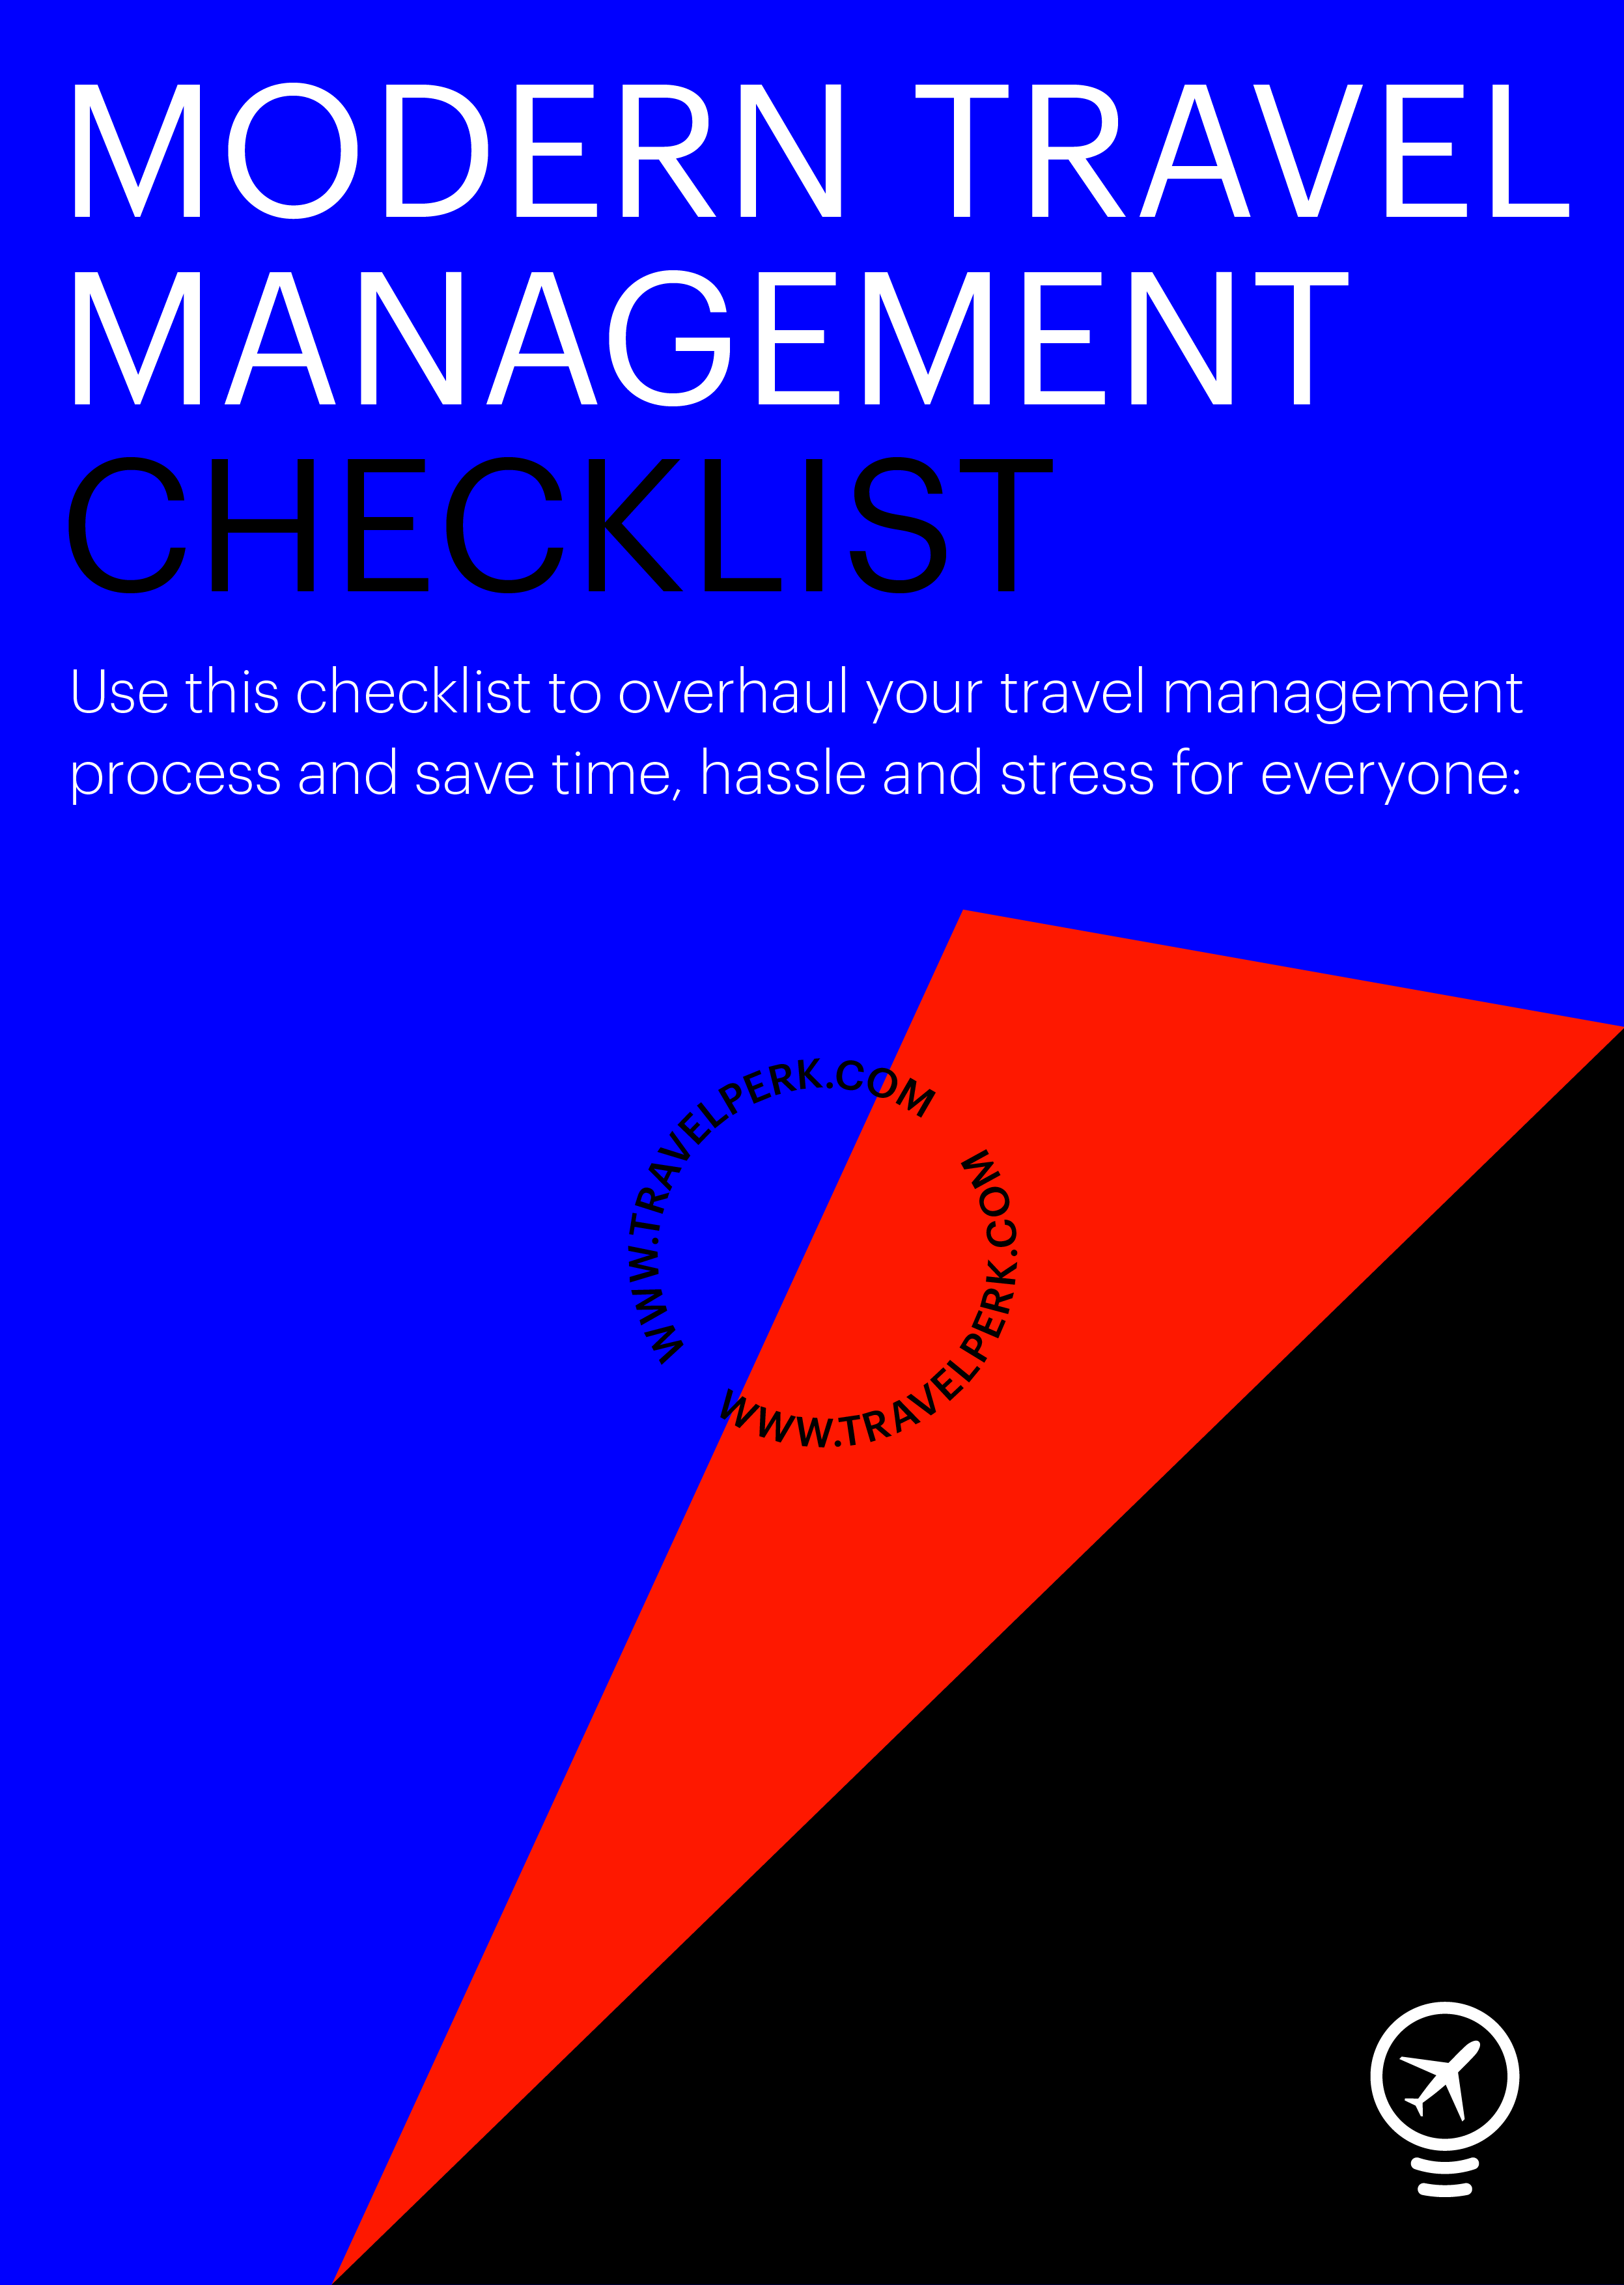 Modern travel management checklist